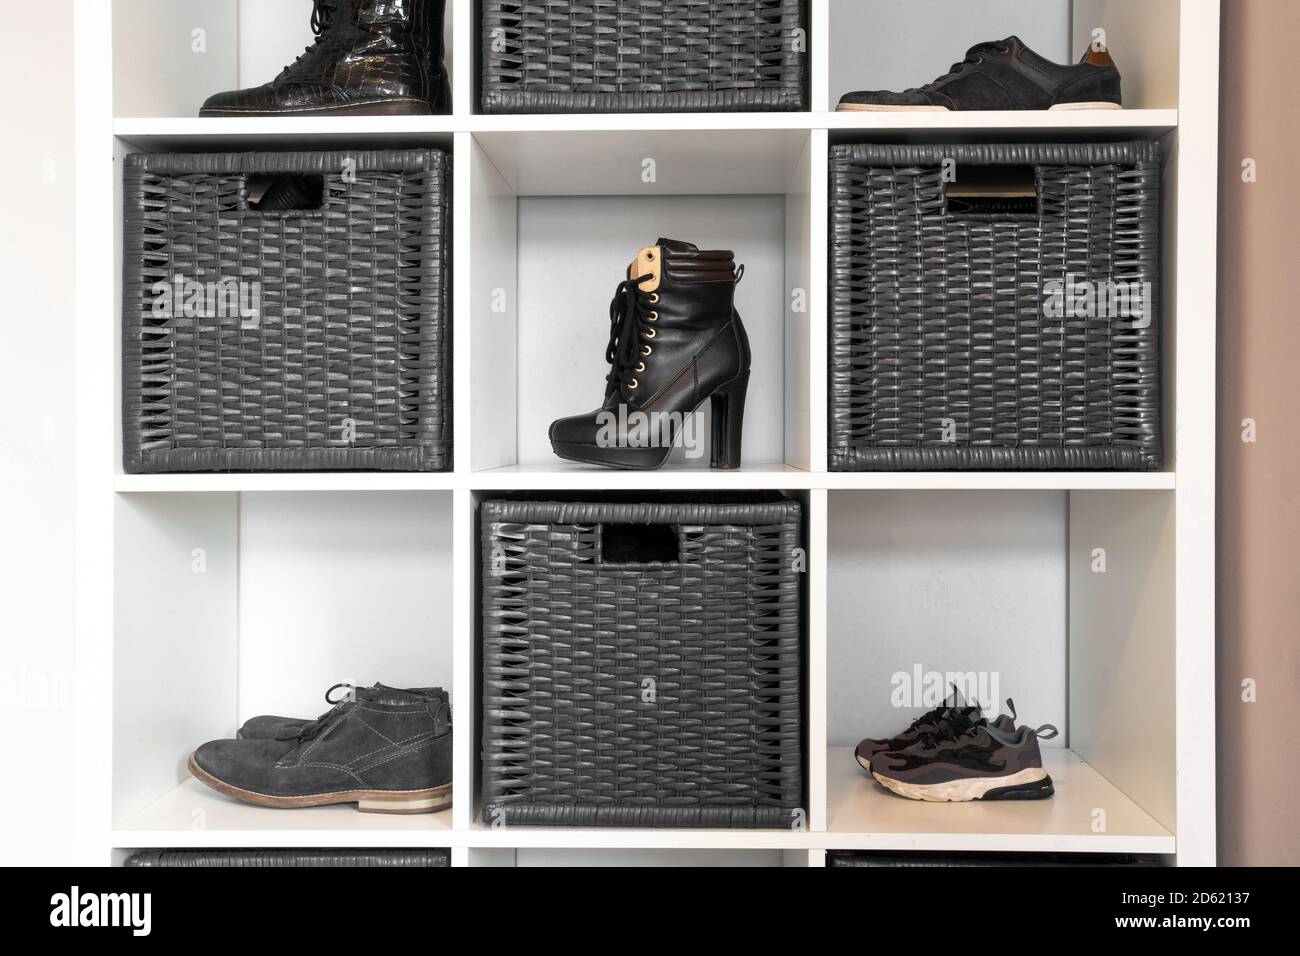 Organisierte Schuhregal im modernen Interieur, verschiedene Schuhe auf  Holzregal, Lagerung für Schuhe in einem modernen Zuhause Stockfotografie -  Alamy